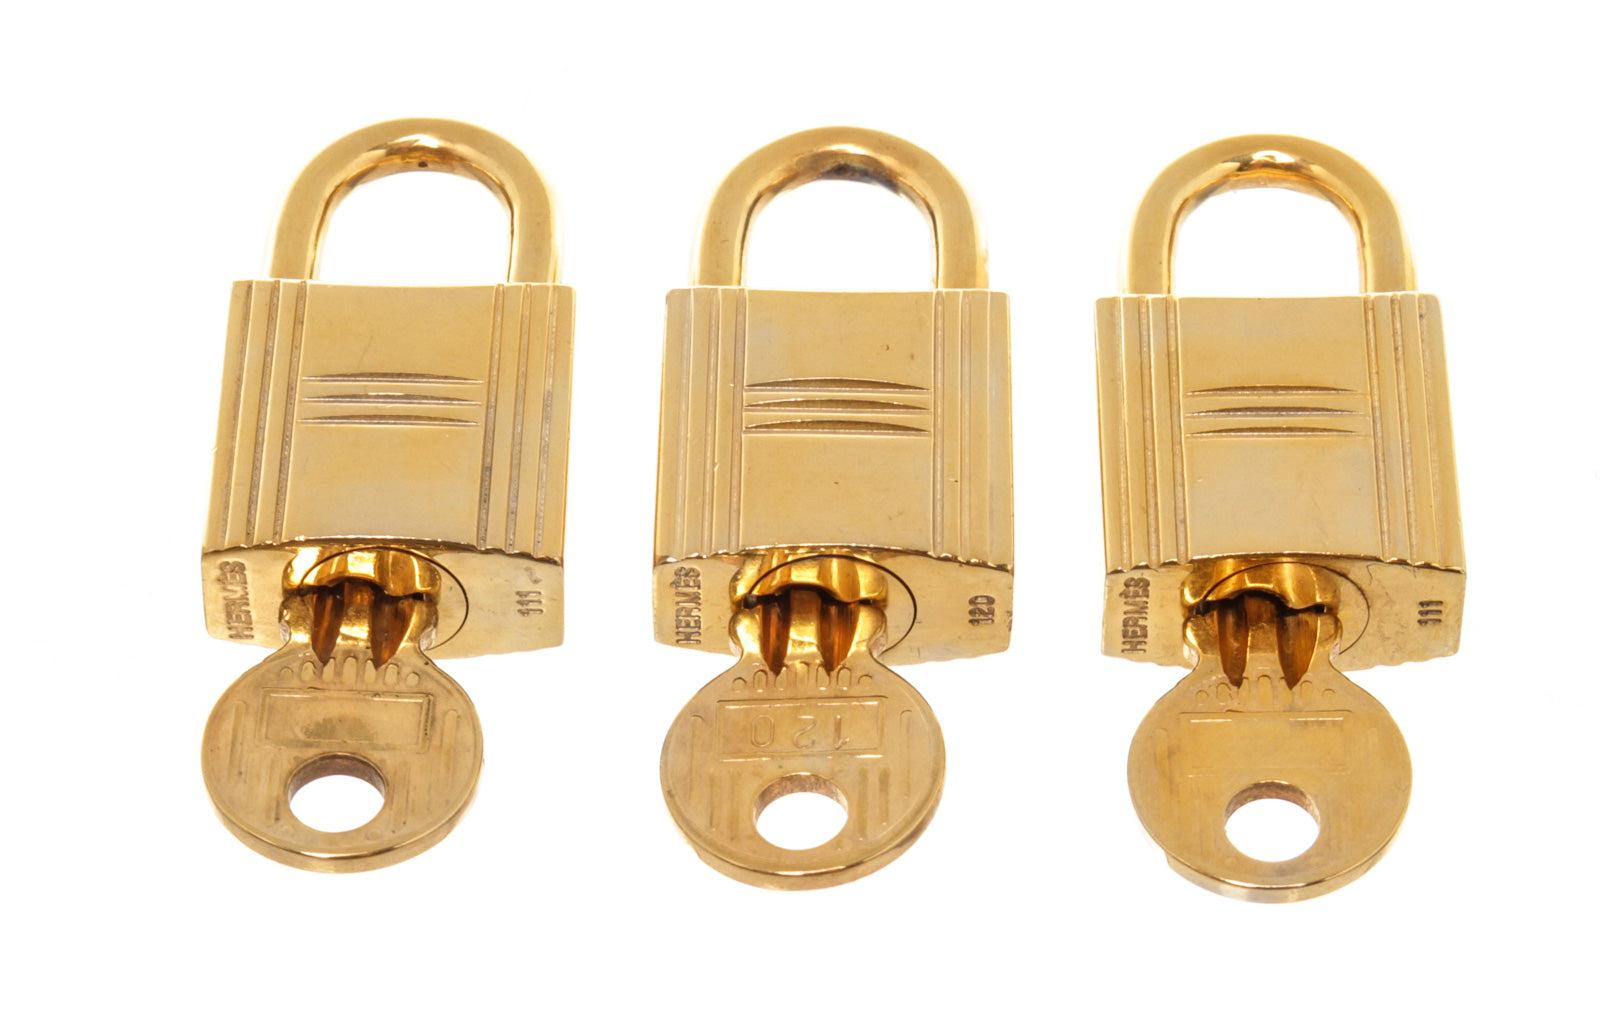 Hermes Gold Cadena Lock Key Set mit goldfarbener Hardware und Drehverschluss.

































46150MSC